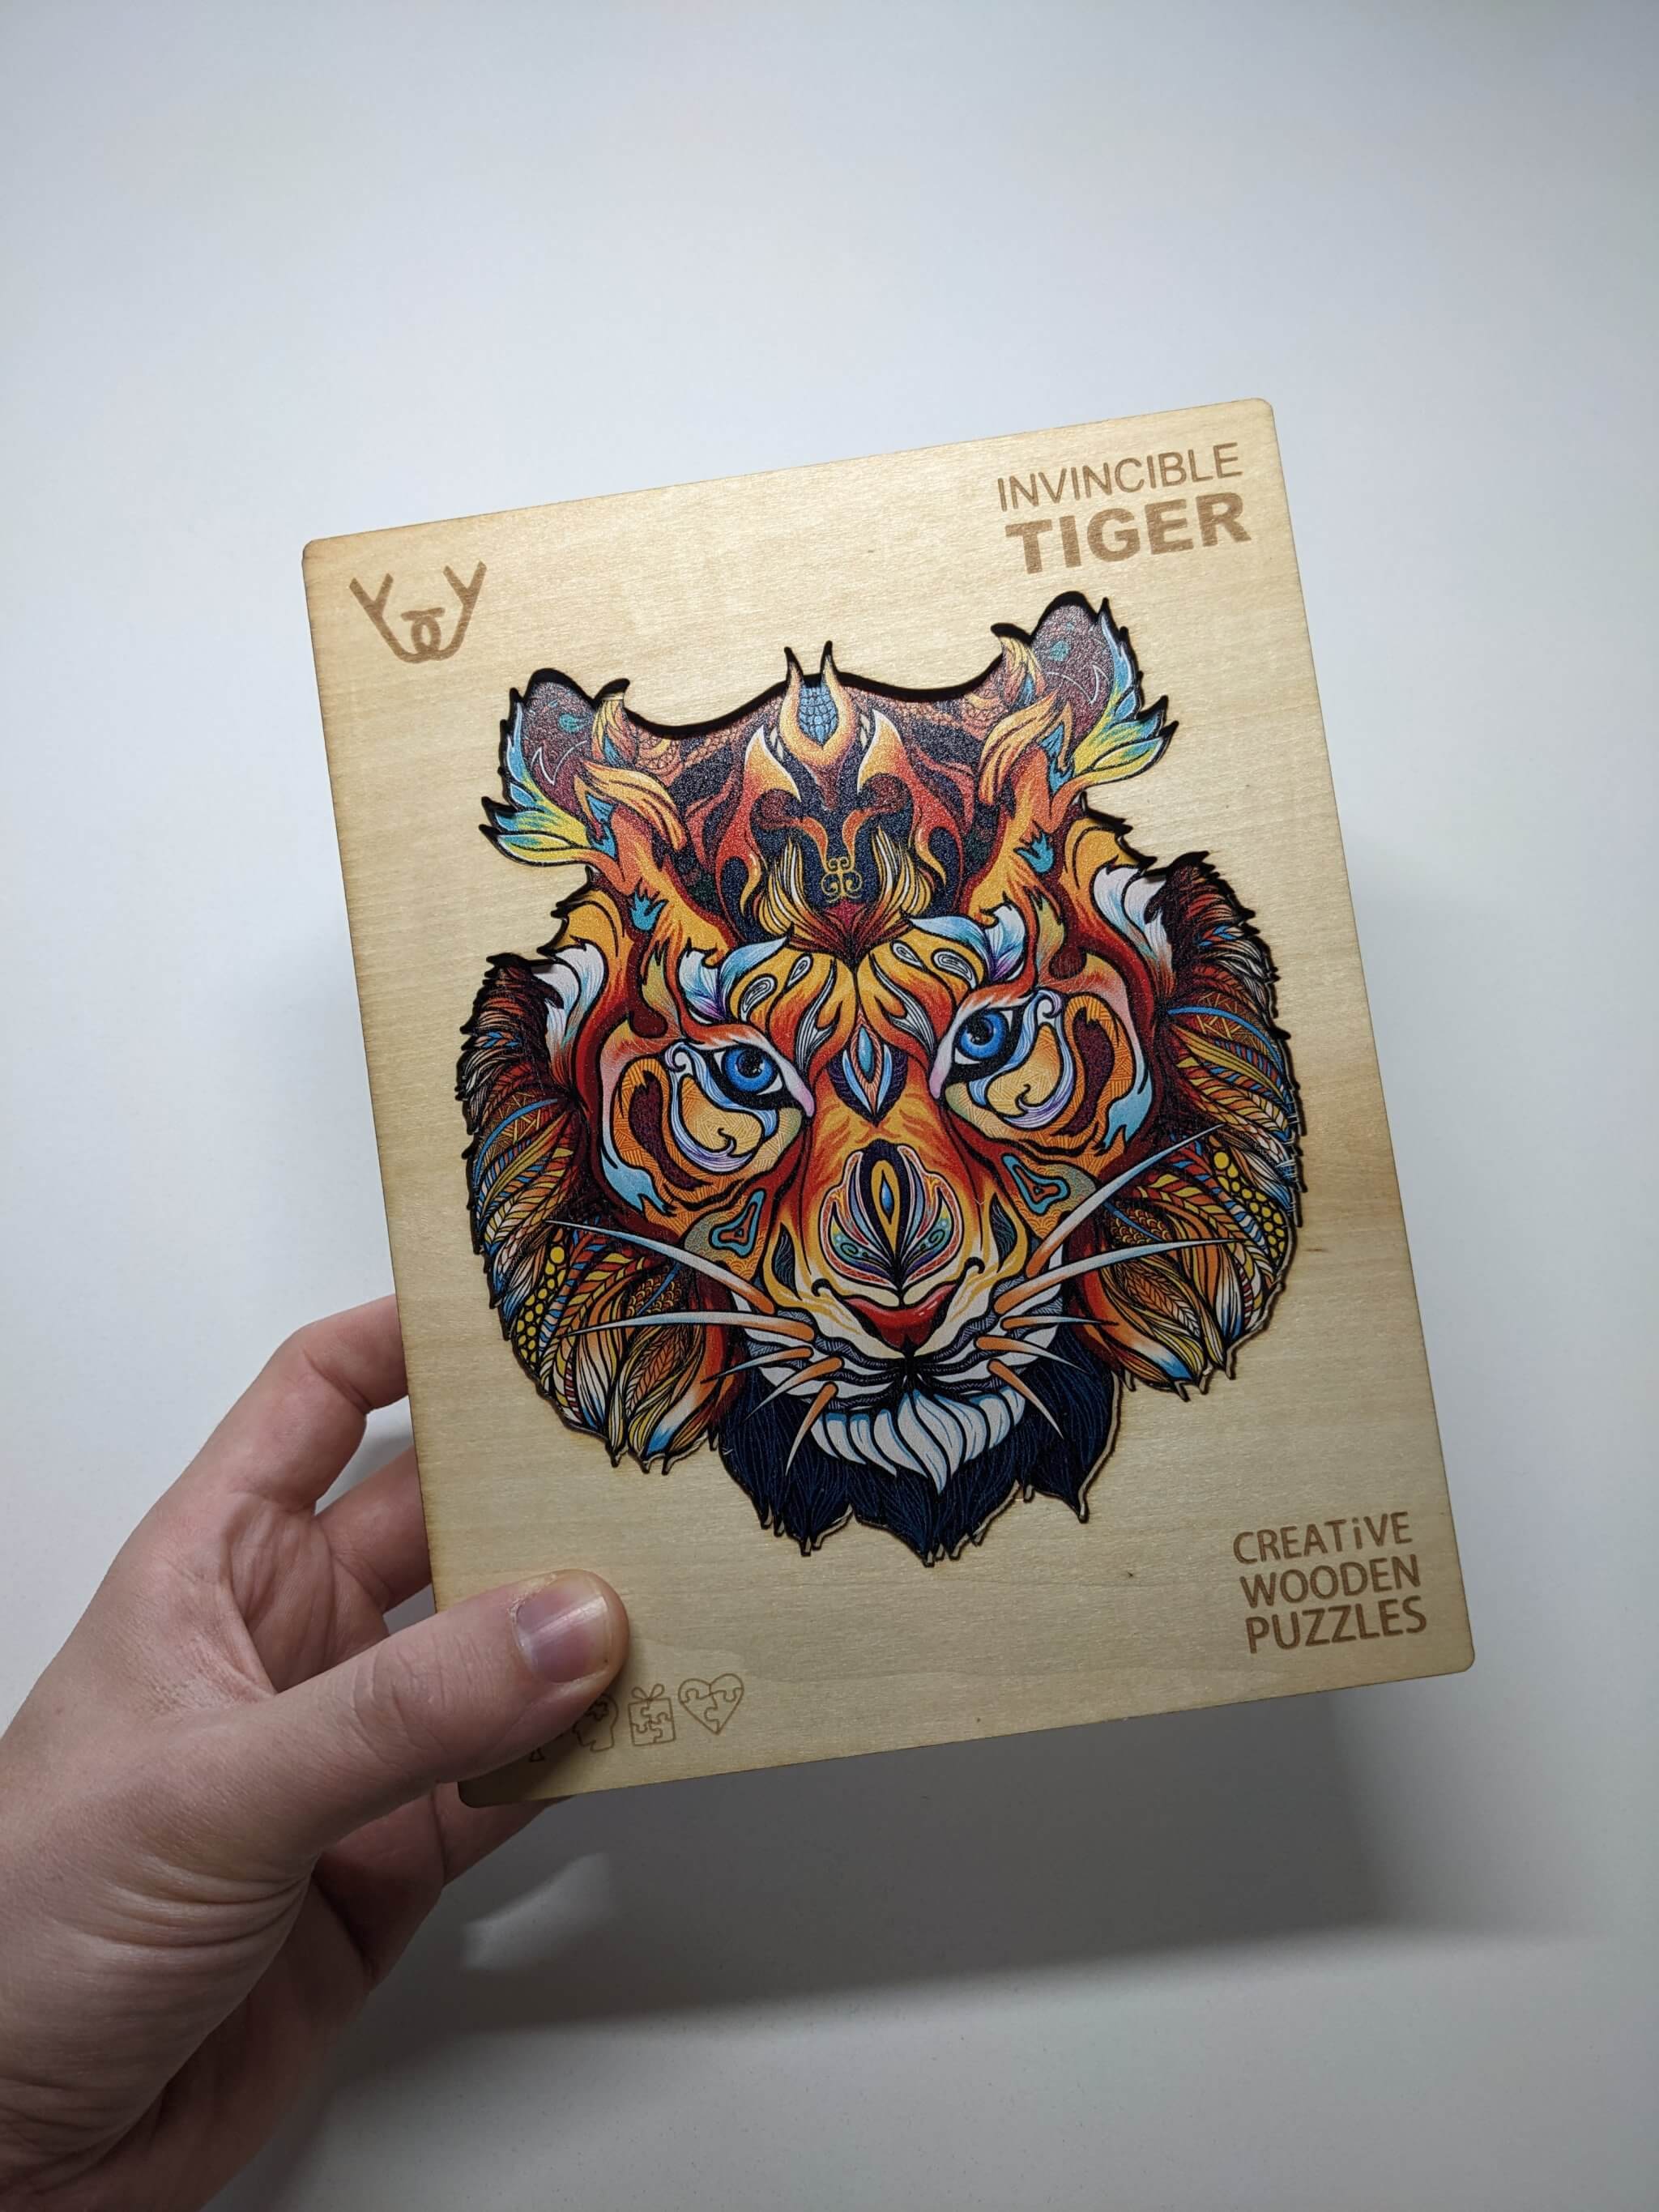 Dřevěné puzzle – Invicible Tiger (tygr)